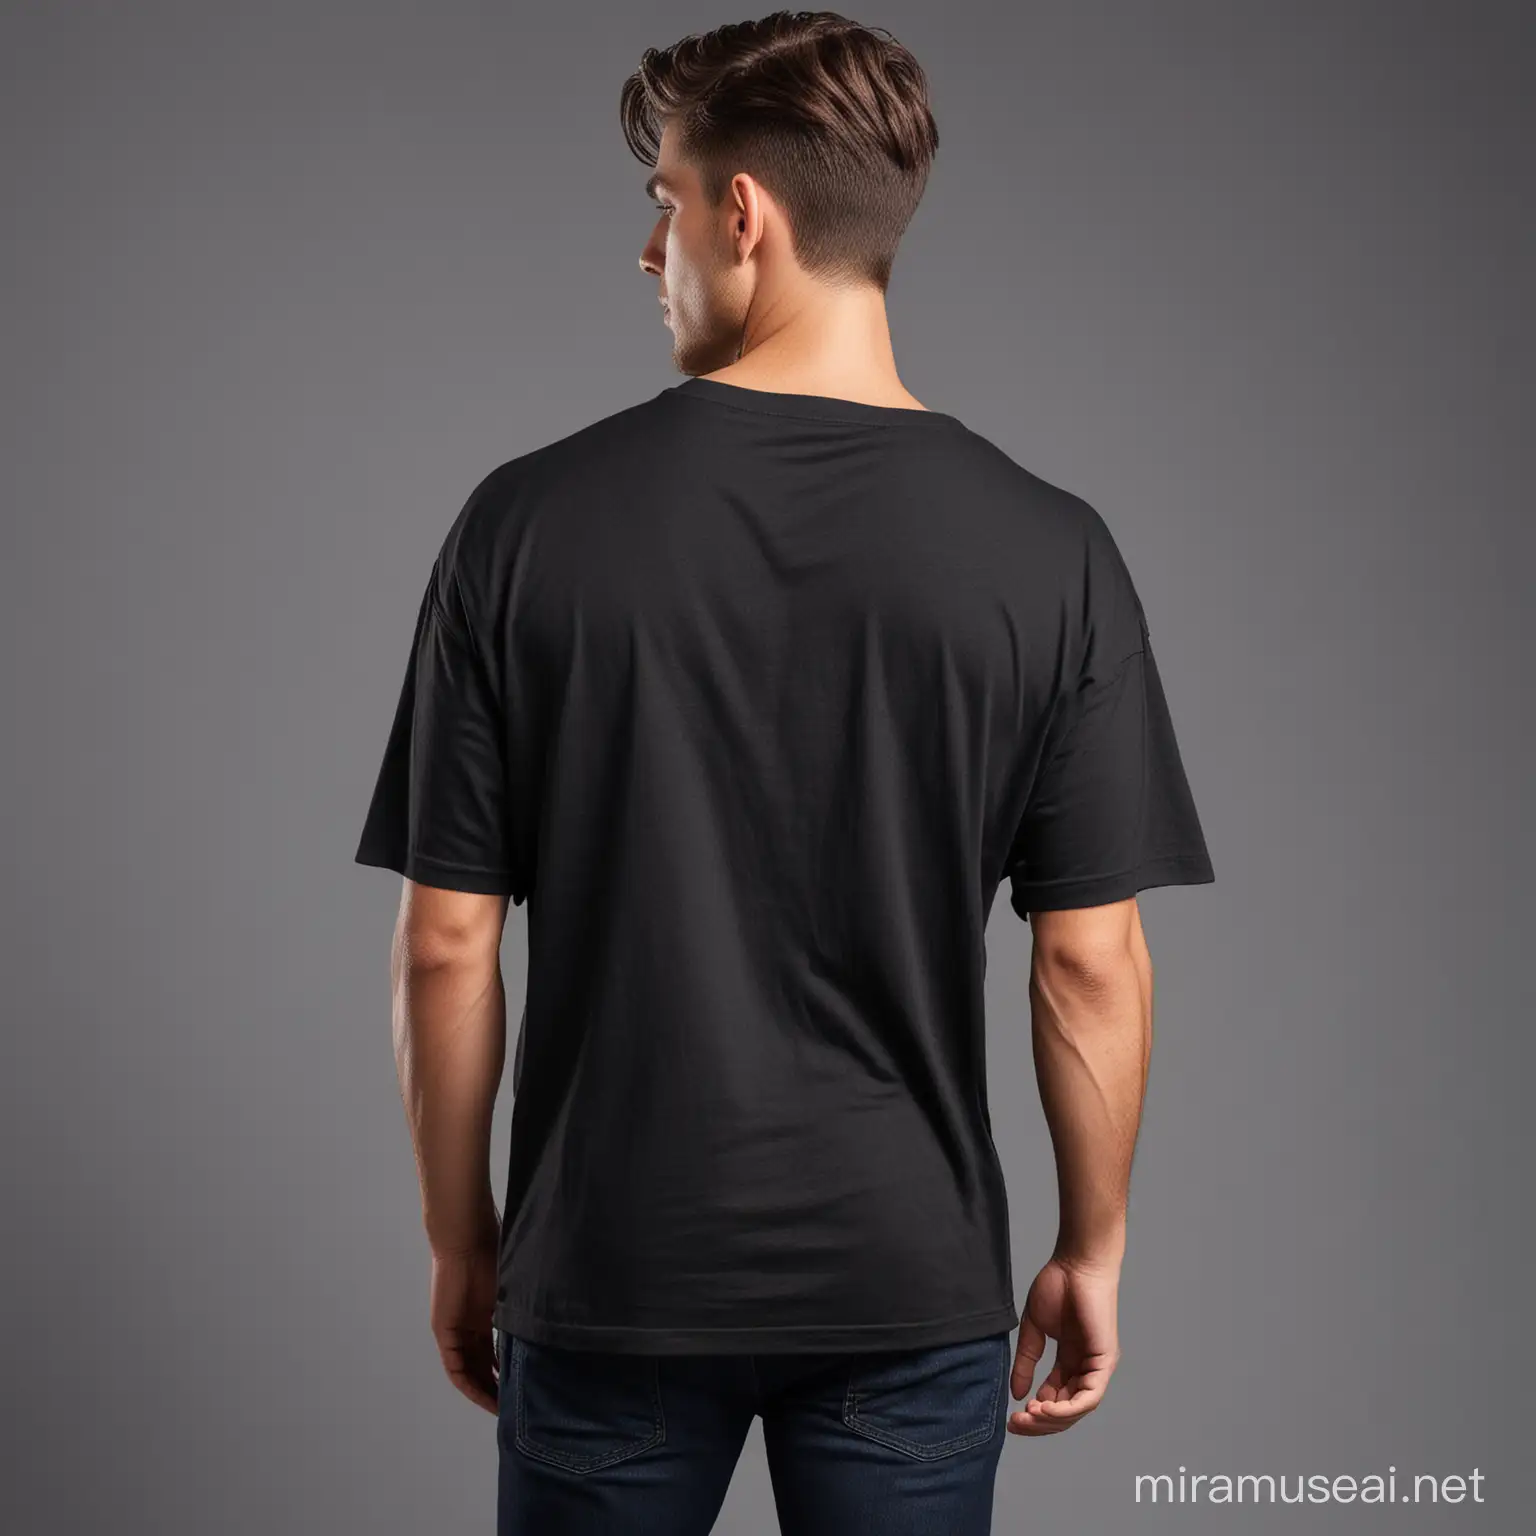 Stylish Male Model Showcasing Black Oversized Tshirt with Professional Lighting